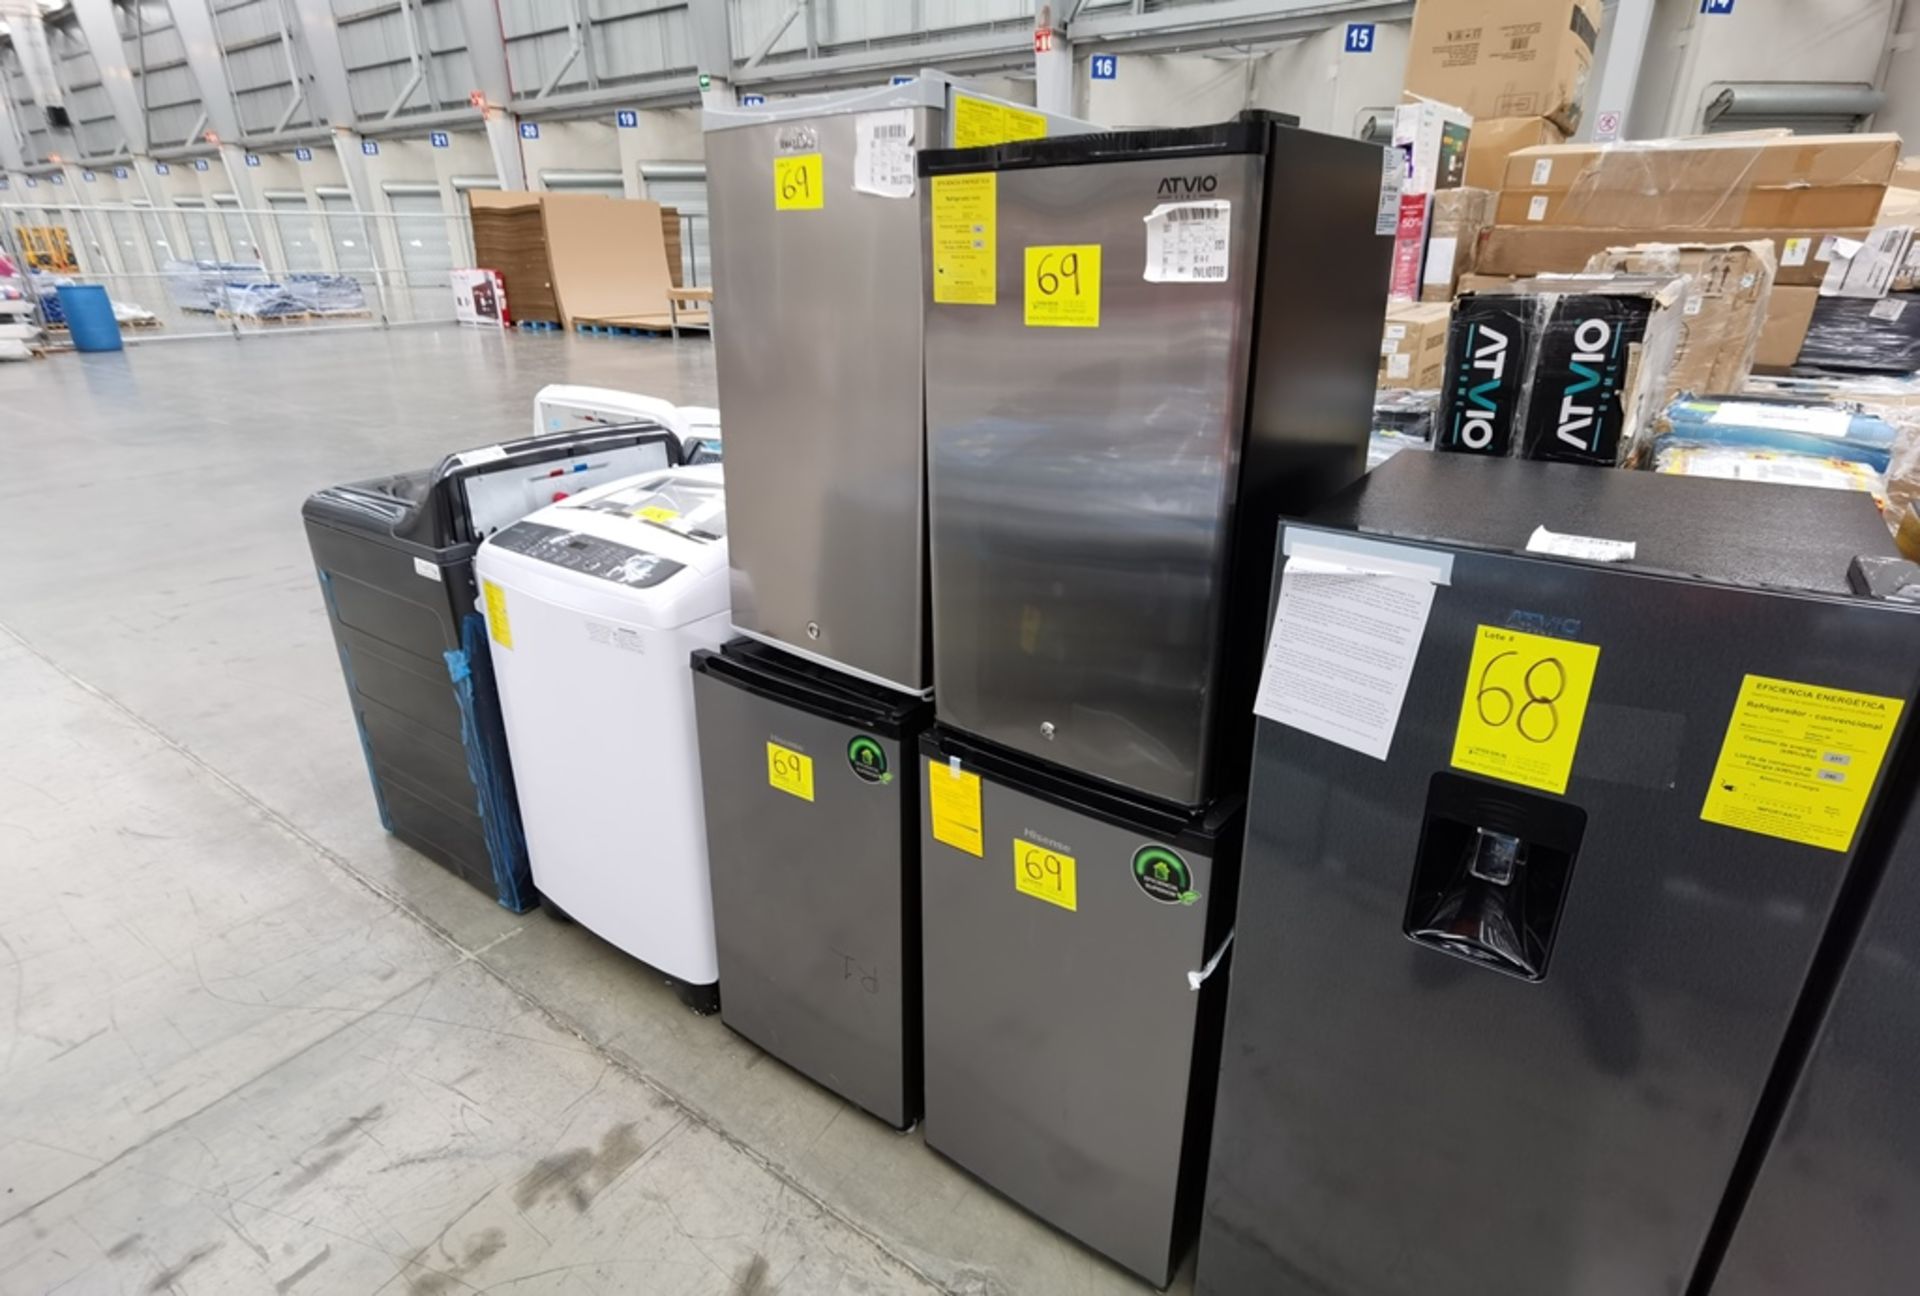 Lote De 4 Refrigeradores Contiene: 1 Refrigerador Marca Atvio, Modelo BC90SU, Serie N/D, Color Gris - Image 6 of 11